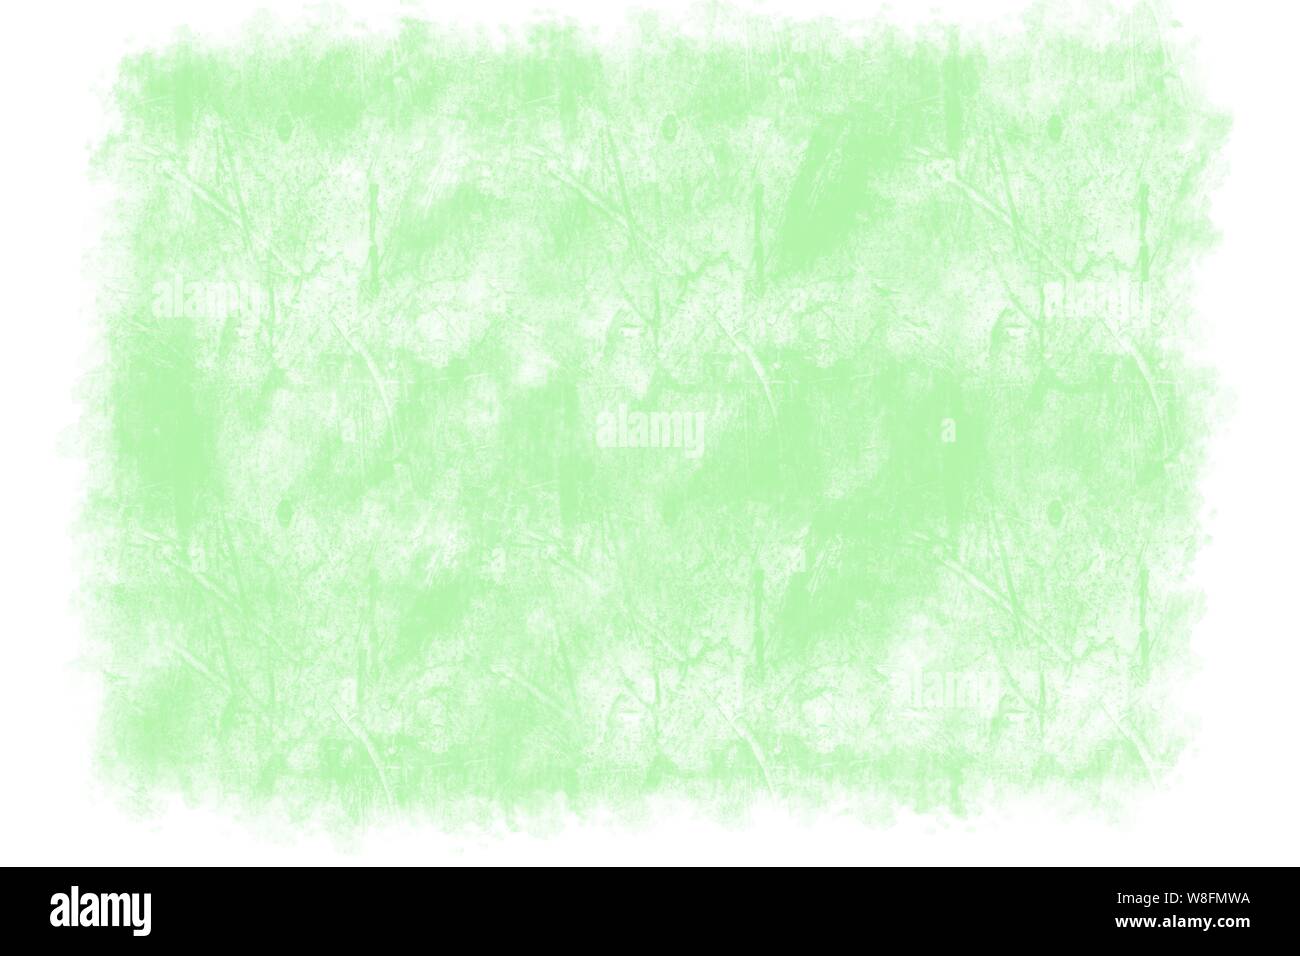 Il neon verde disegnata a mano ruvida parete di cemento piastrella la configurazione di sfondo irregolare con bordo bianco Foto Stock